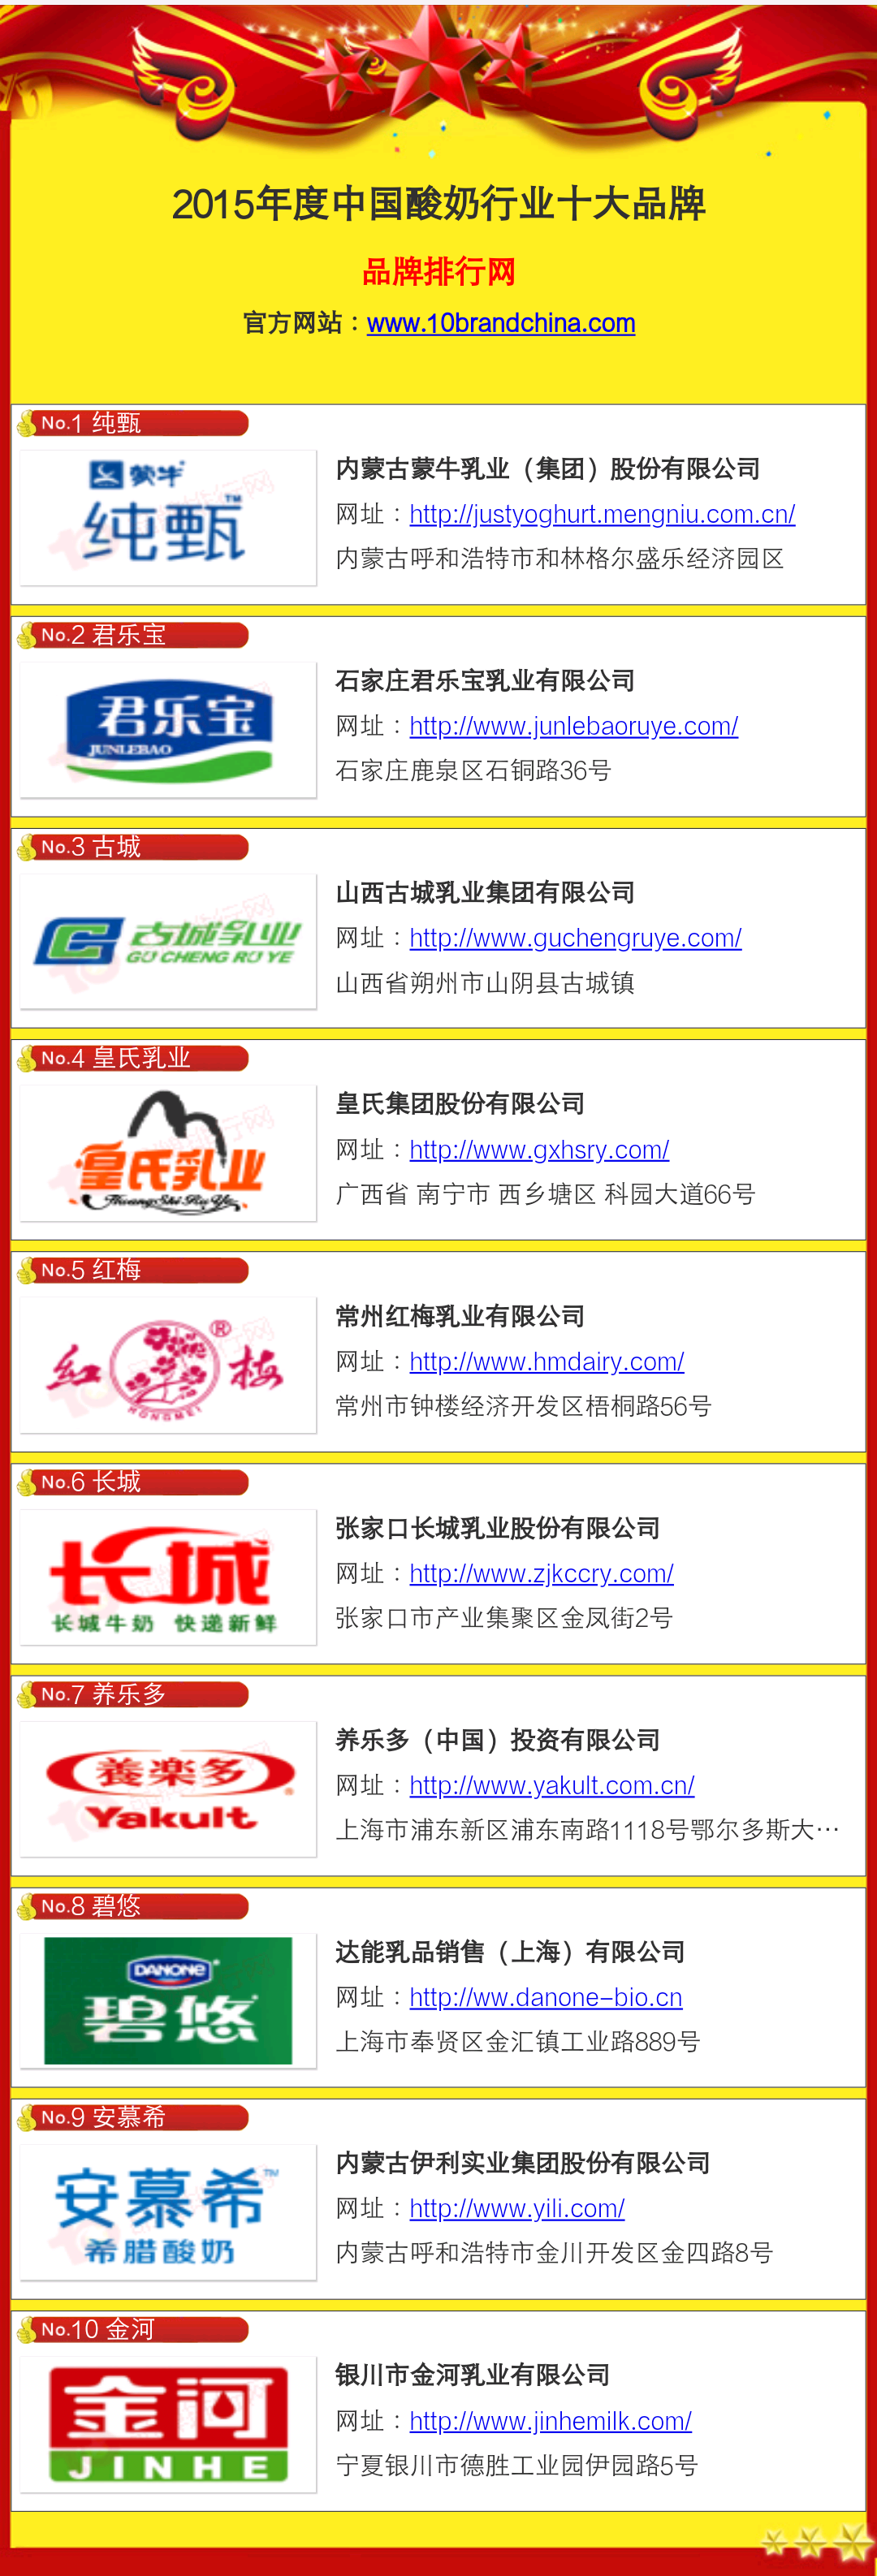 2016-01-26  2015年中国酸奶十大品牌 -金河榜上有名.png